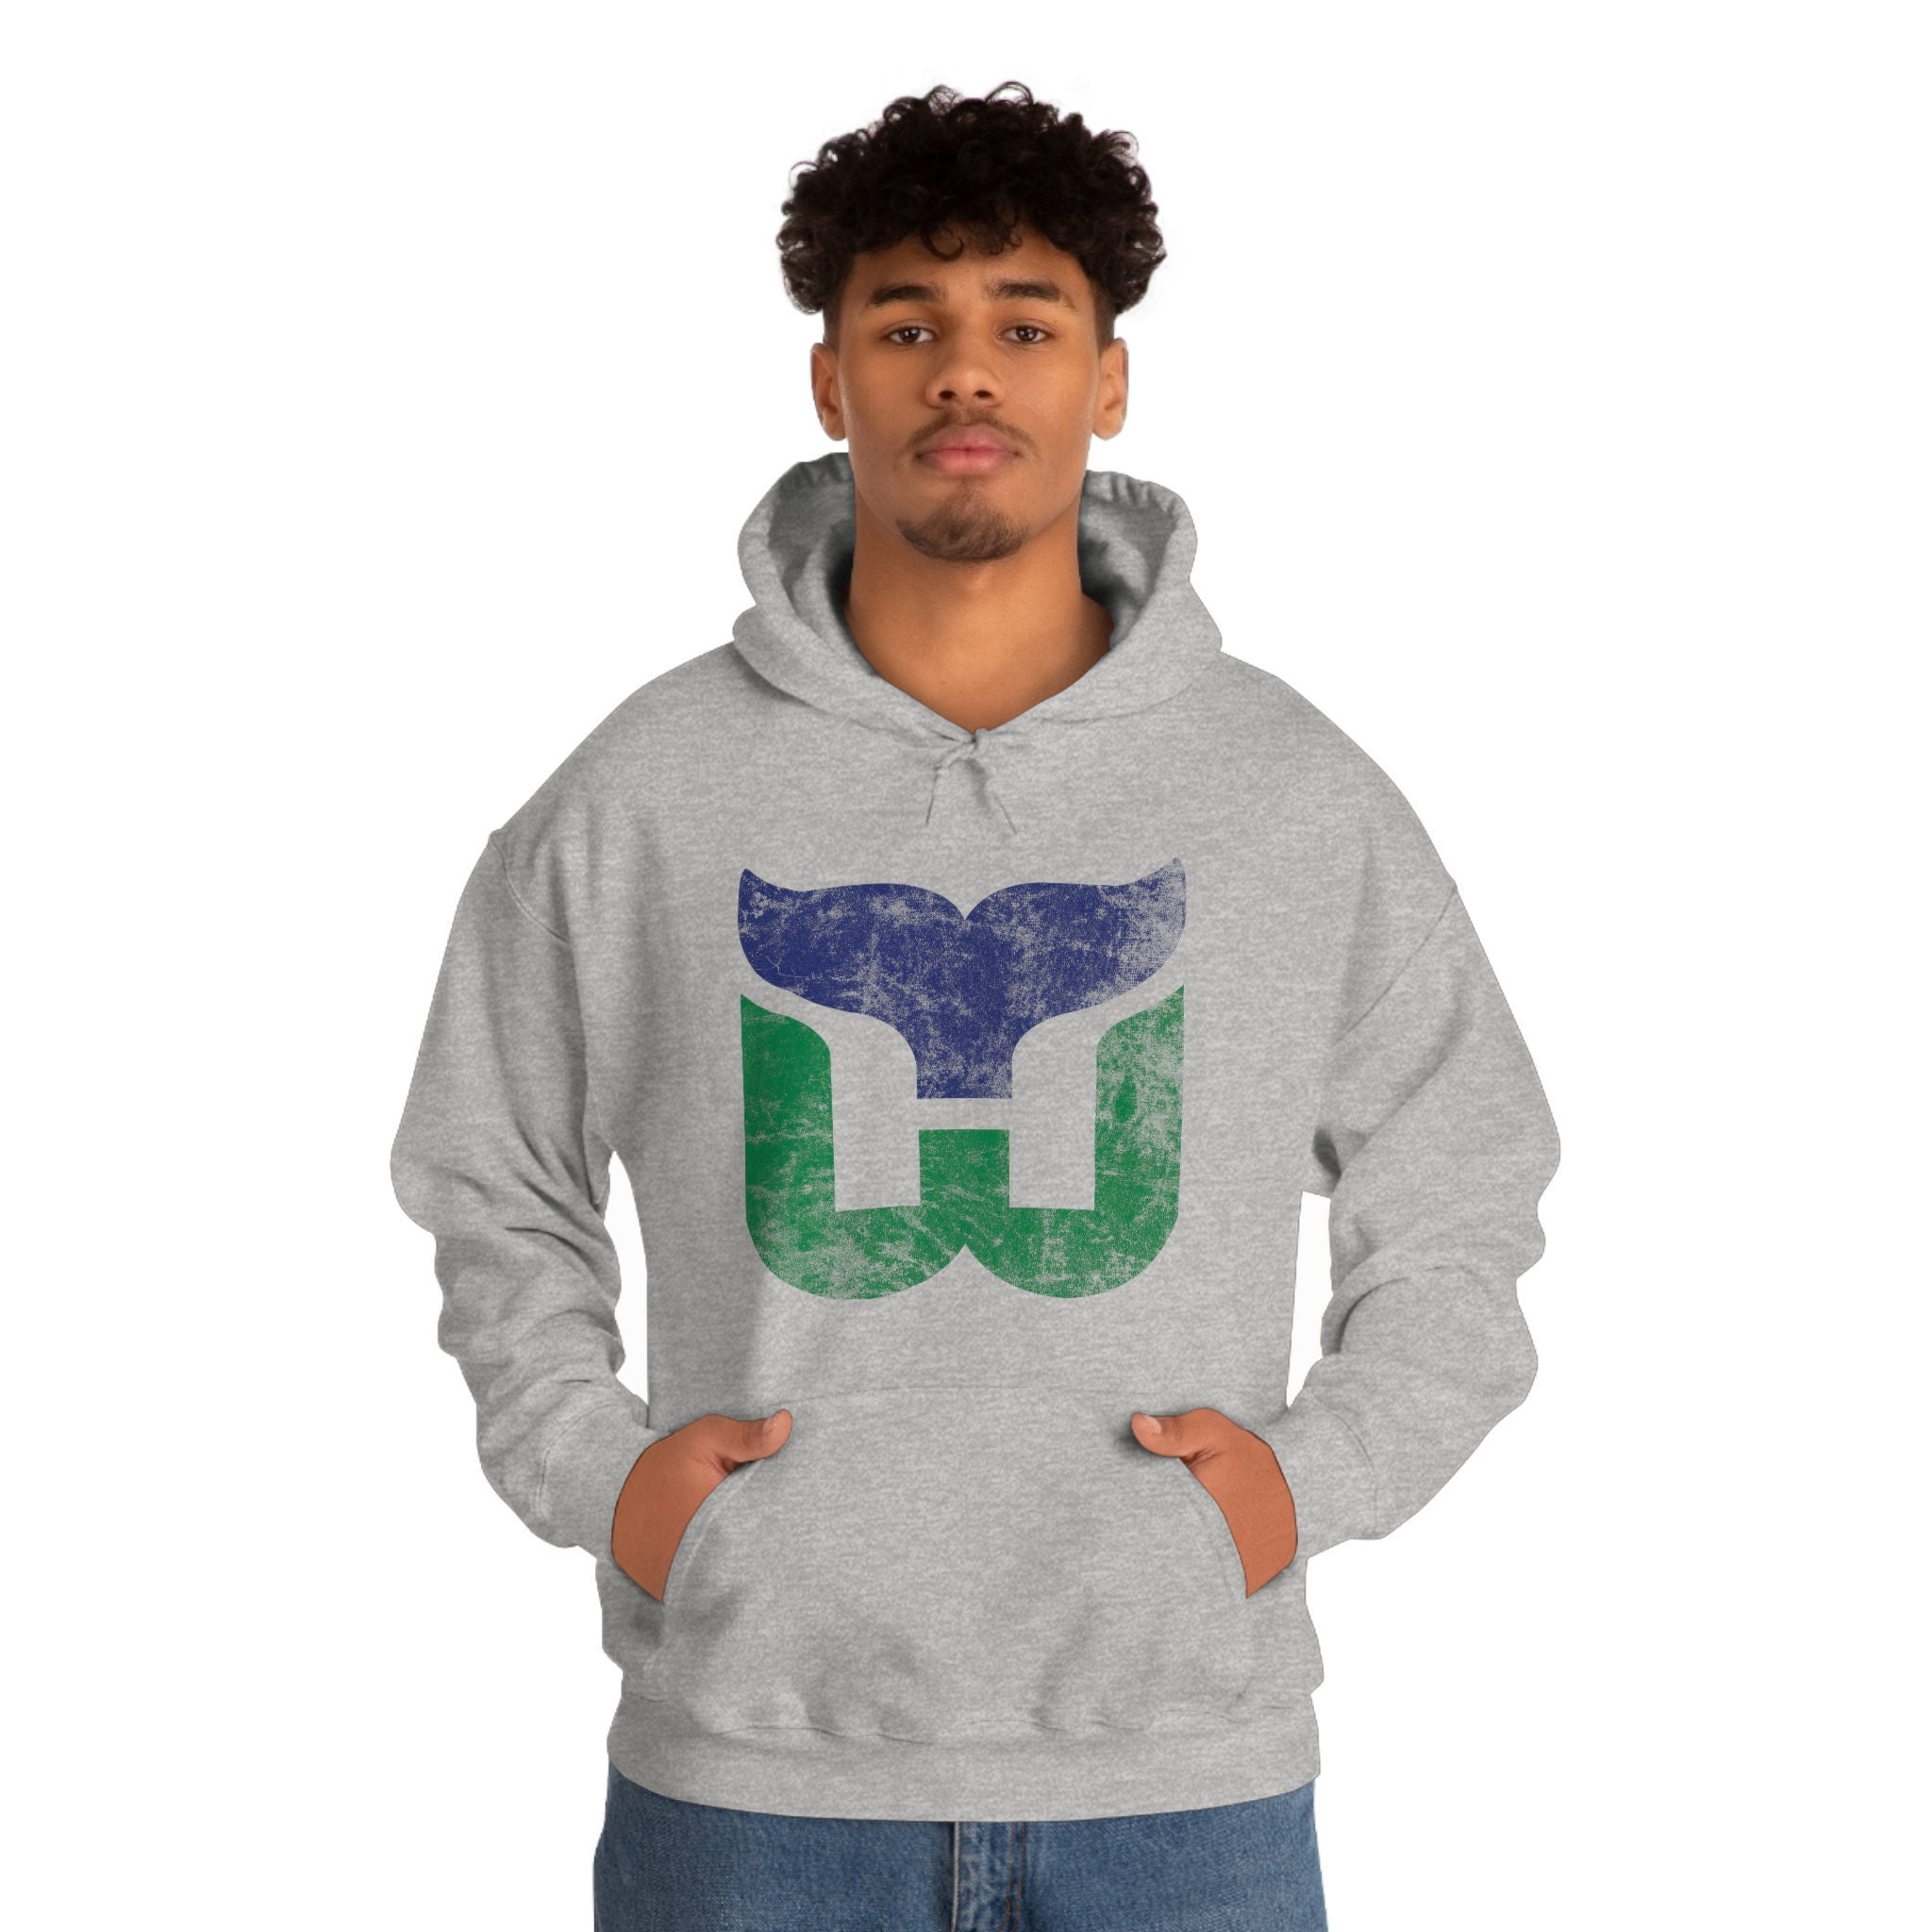 Hartford Whalers Vintage Walk Tall Shirt, hoodie, longsleeve, sweater